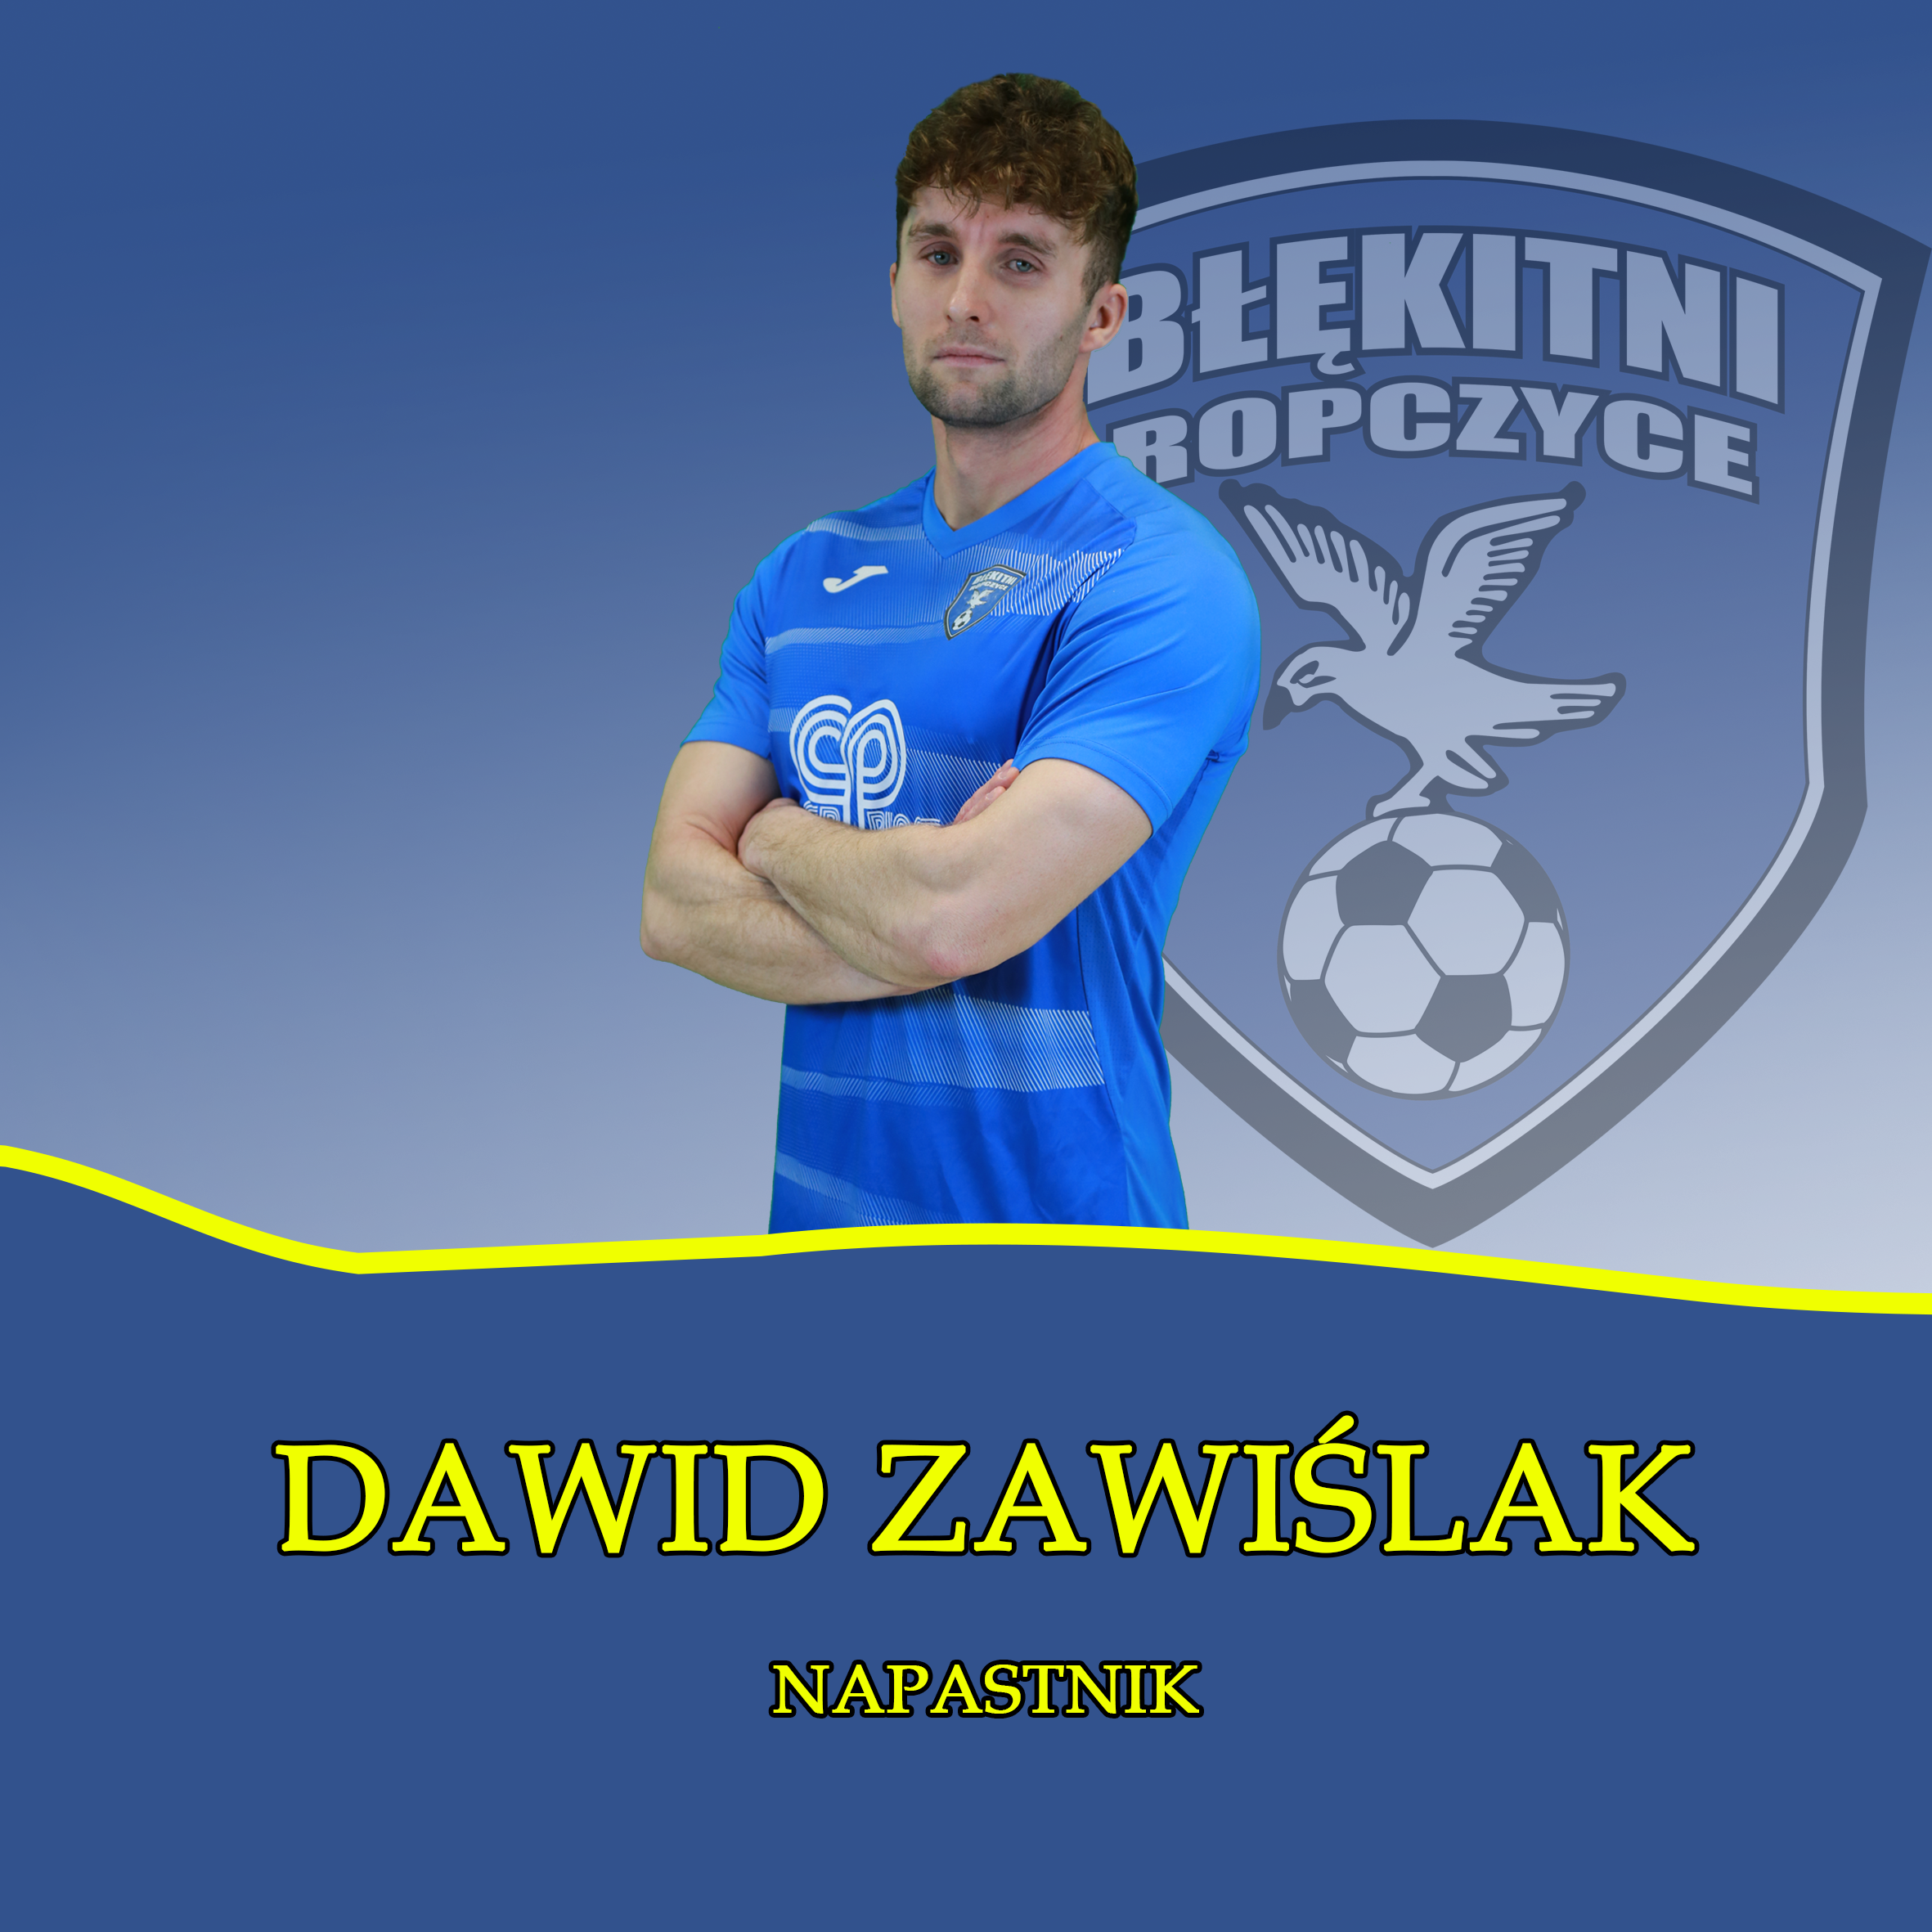 Dawid Zawiślak